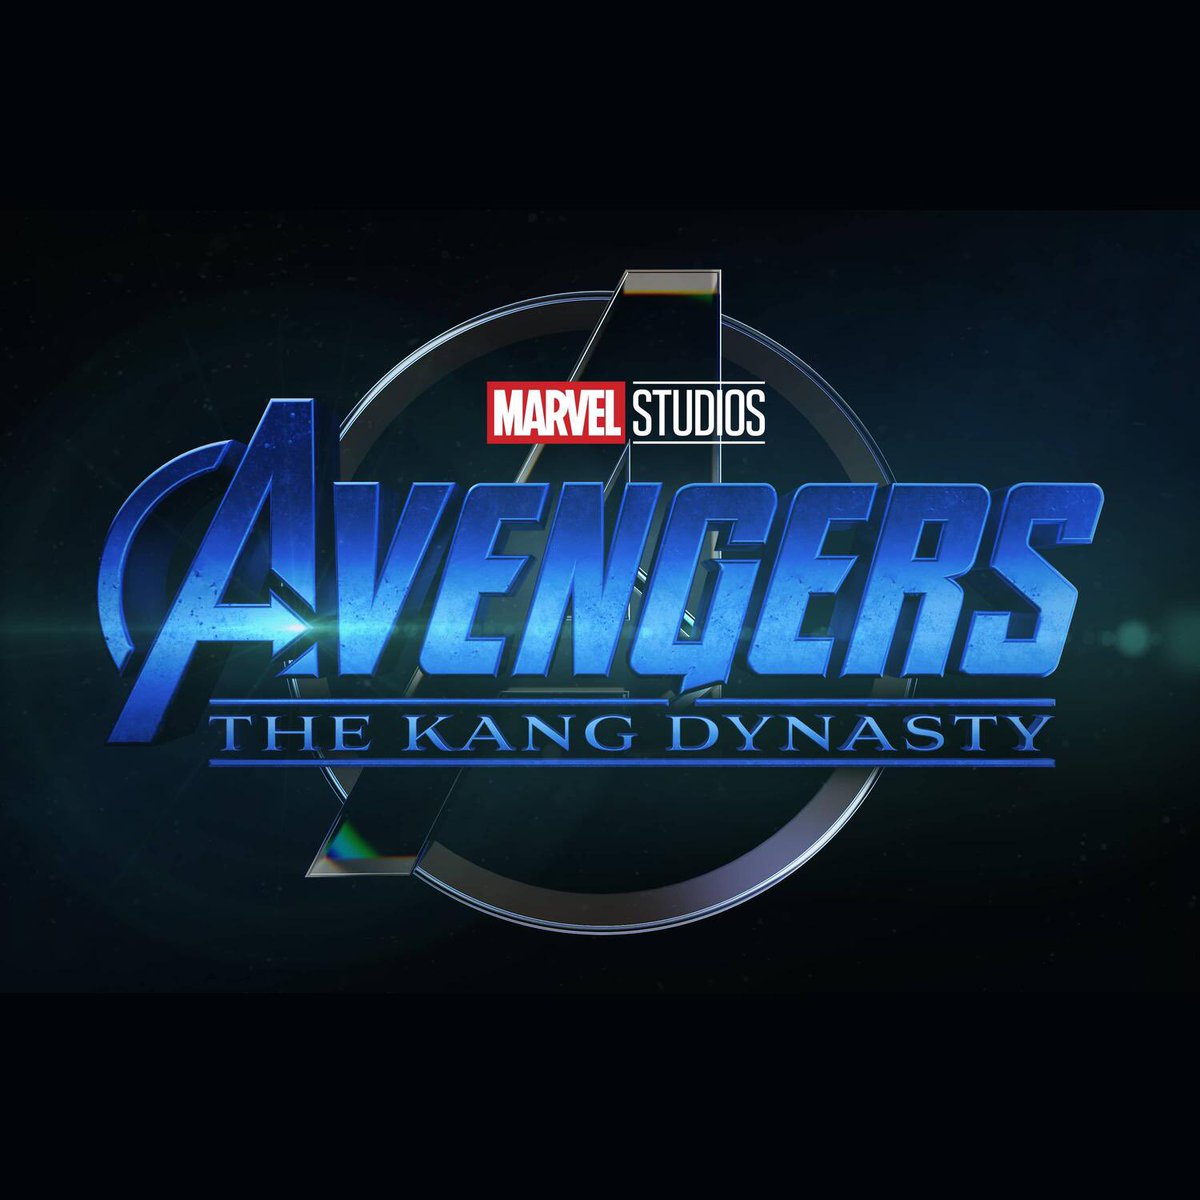 Se informa que #AvengersKangDynasty  será dirigida por alguien que nunca antes ha dirigido una película de Marvel.

Se espera que la película comience a rodarse a principios del próximo año

#MarvelStudios